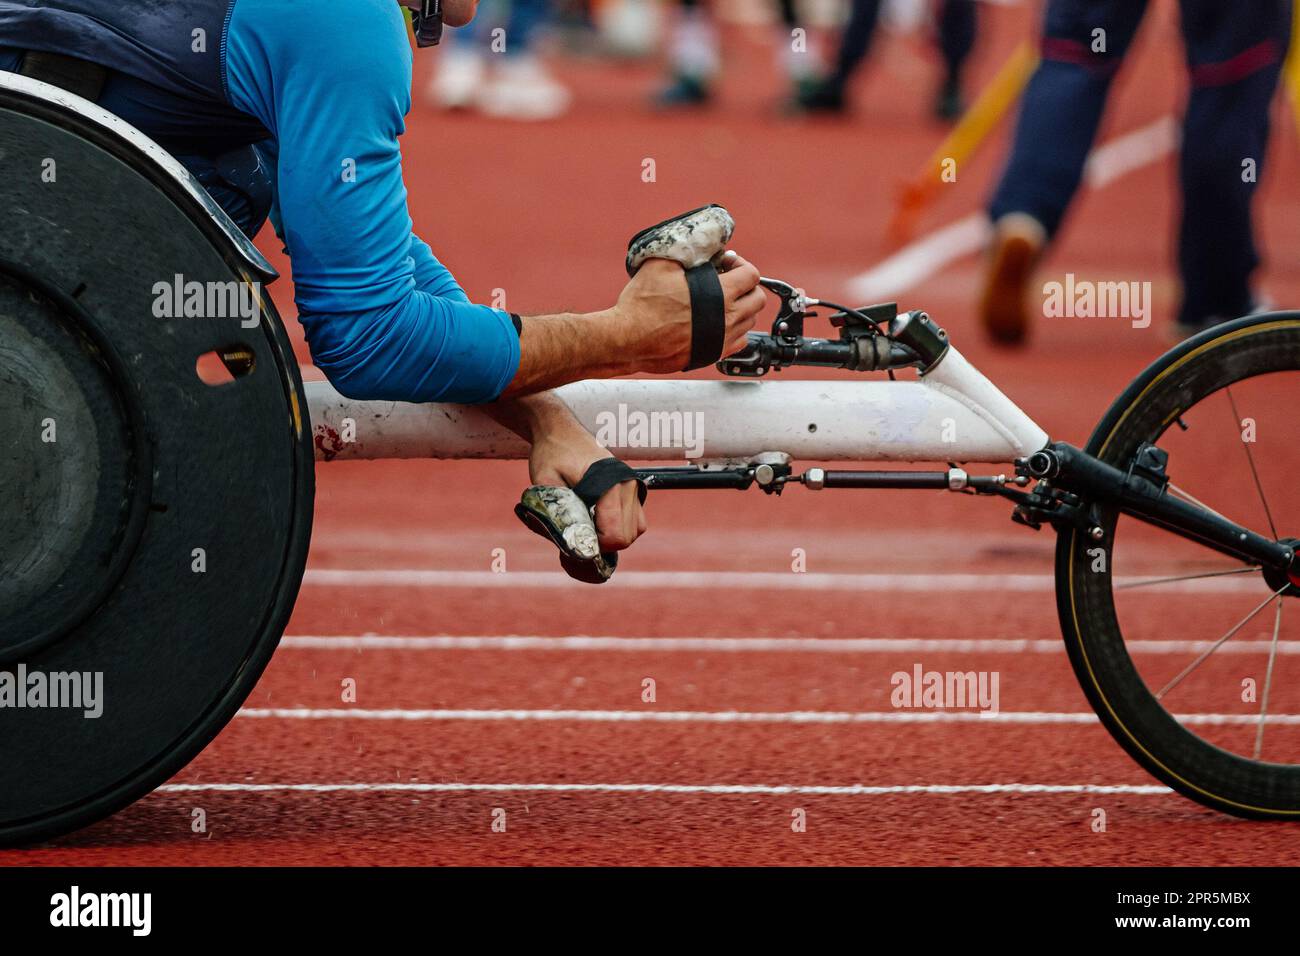 fauteuil roulant de course en gros plan avec athlète masculin, mains en gants de course, championnats d'été para athlétisme Banque D'Images